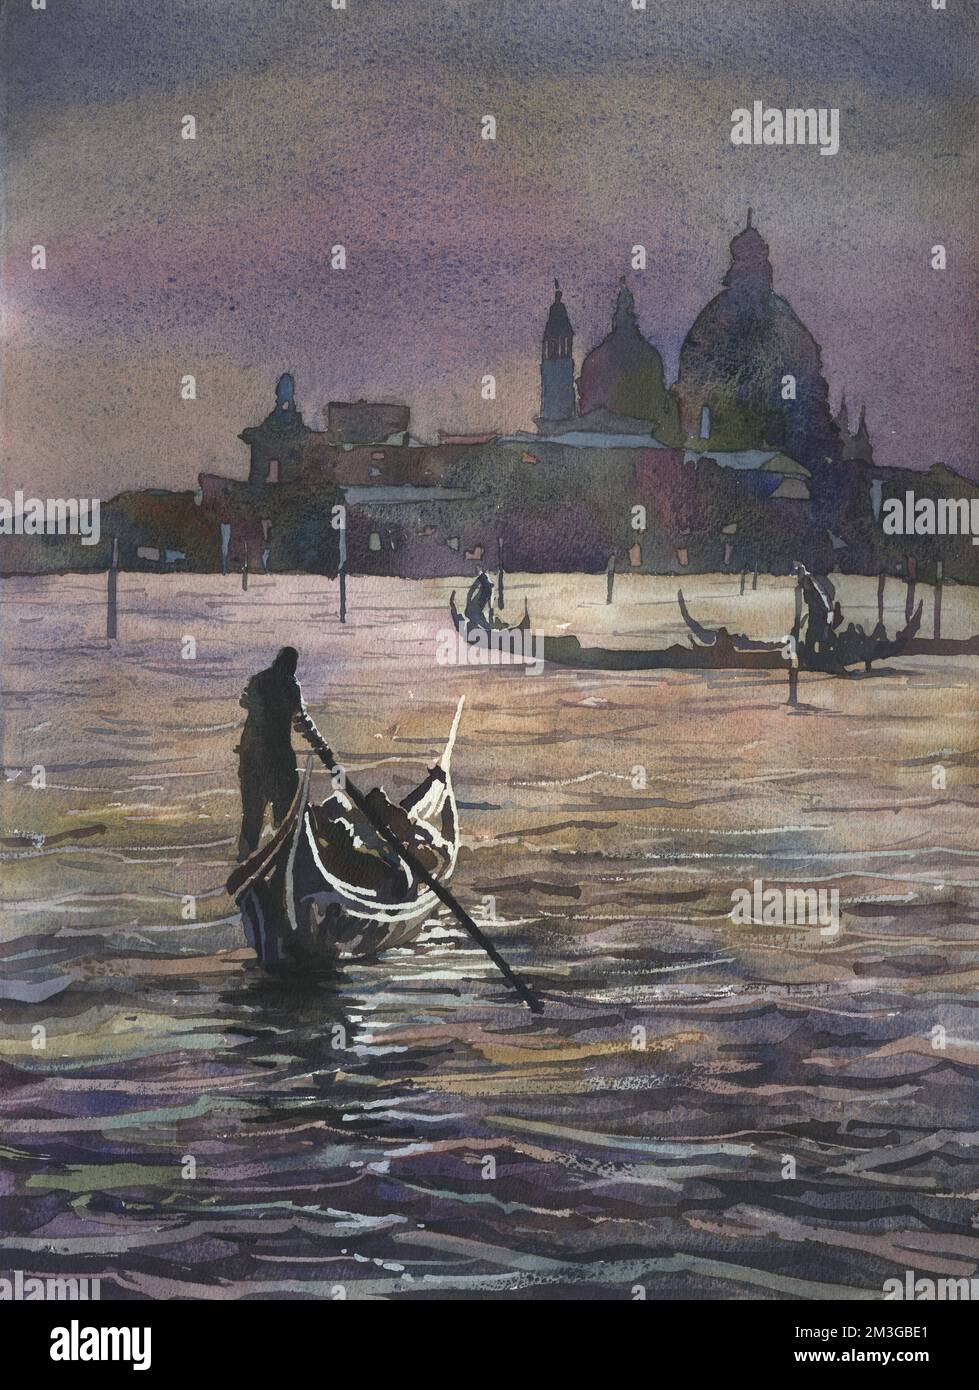 Venise Italie gondolier et église de Santa Maria della Salute a été illuminée au clair de lune dans la ville médiévale de Venise, Italie. Aquarelle Banque D'Images